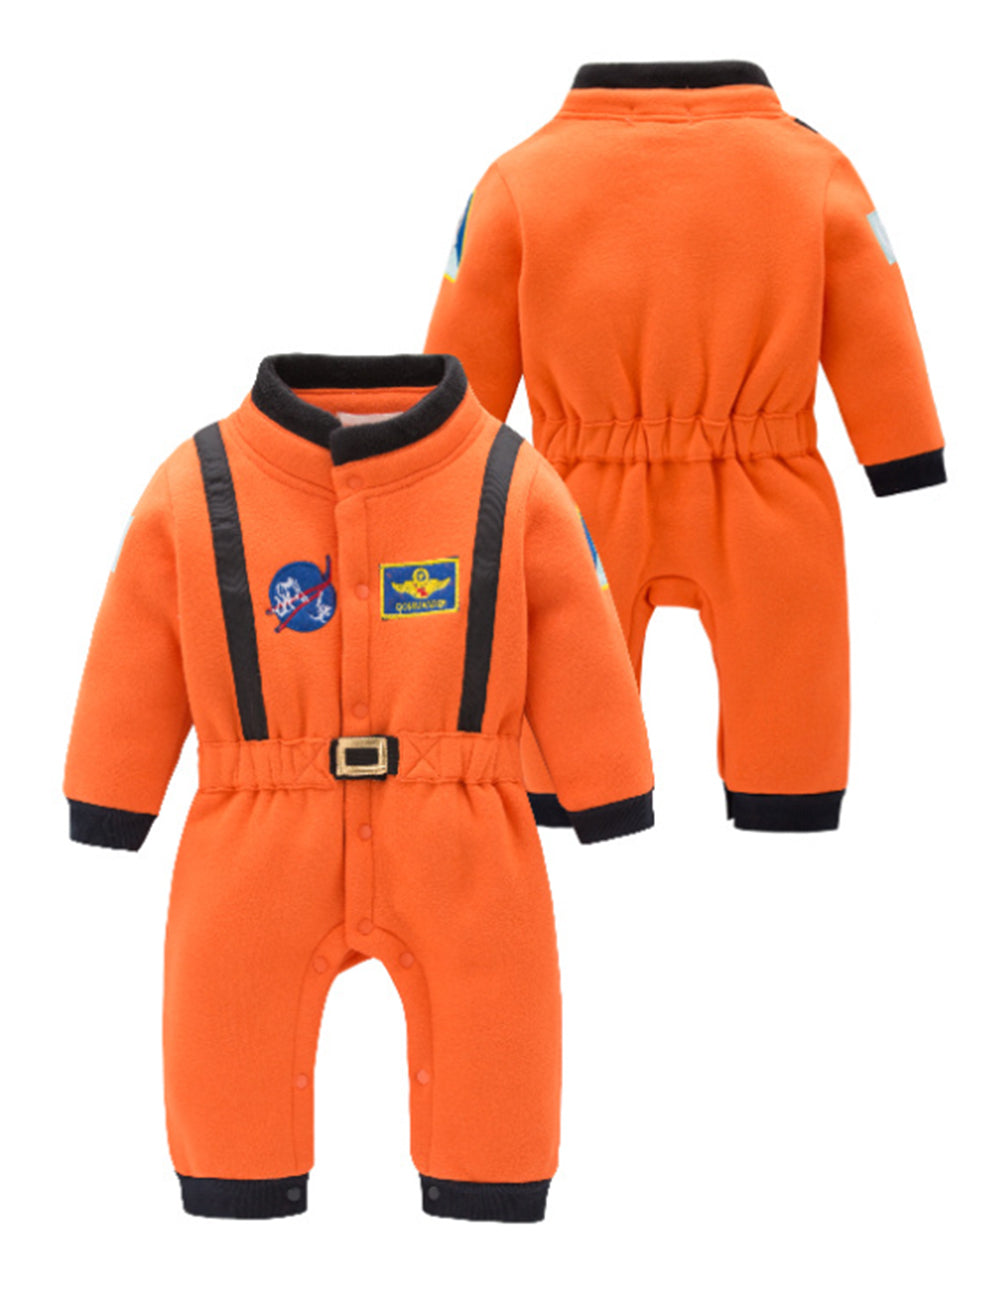 Astronaut Fleece Costume Baby Cosplay Jumpsuit Costume